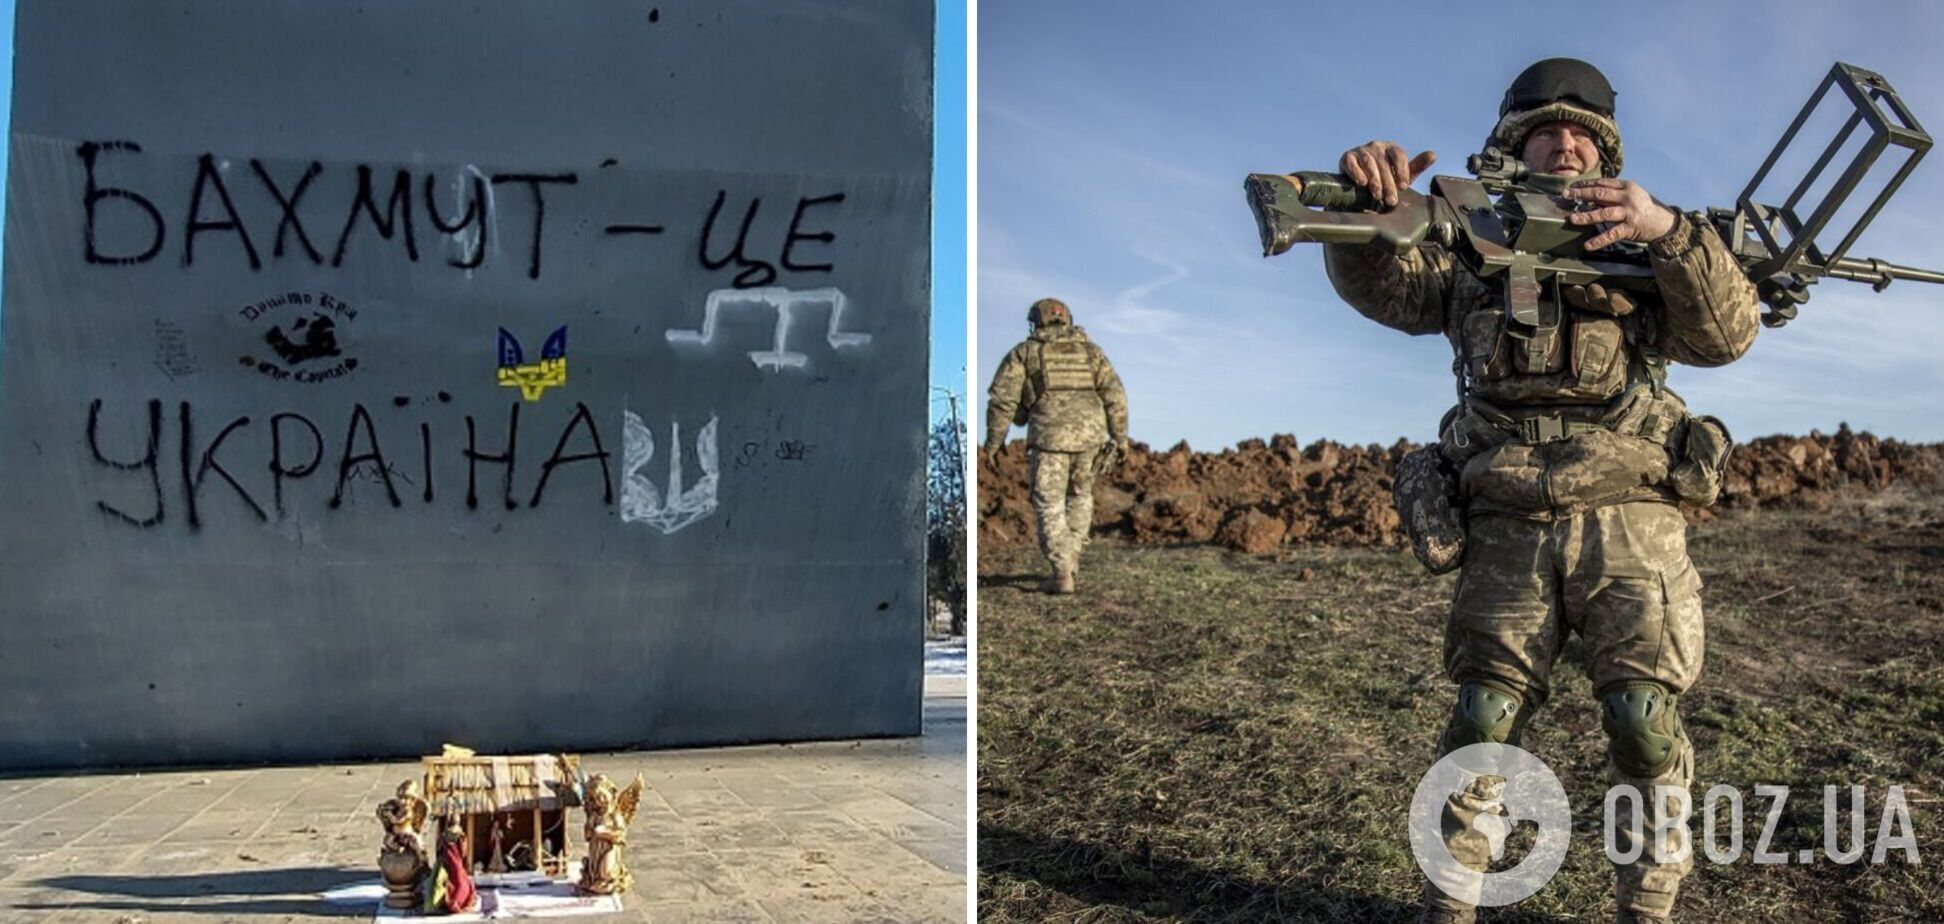 'Це дозволяє зайняти панівні висоти':  у ЗСУ розповіли про просування українських військ під Бахмутом. Карта